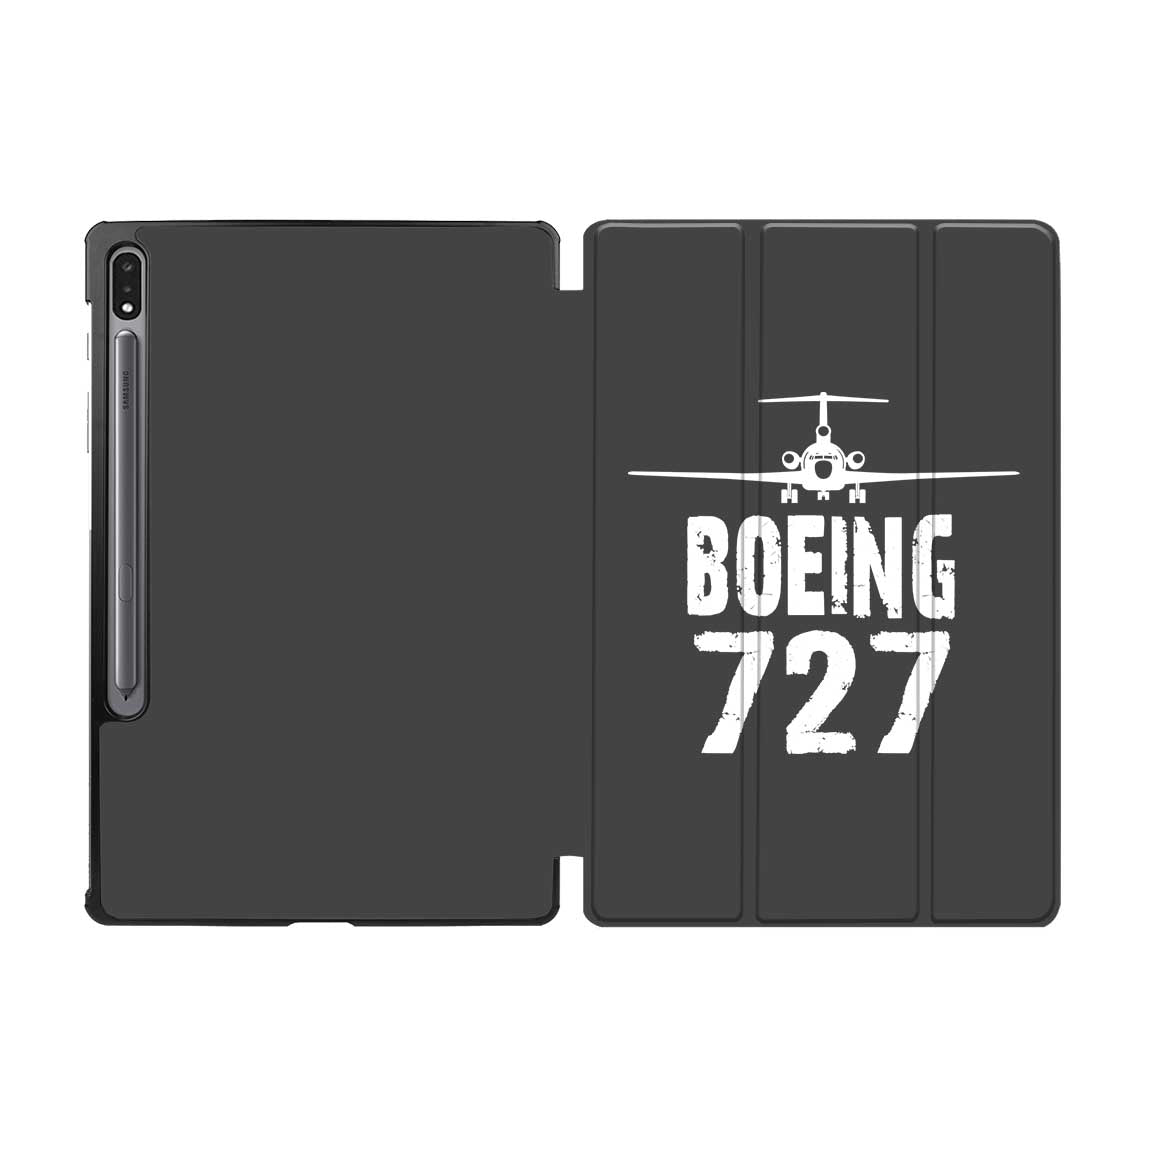 Boeing 727 & Plane Designed Samsung Tablet Cases